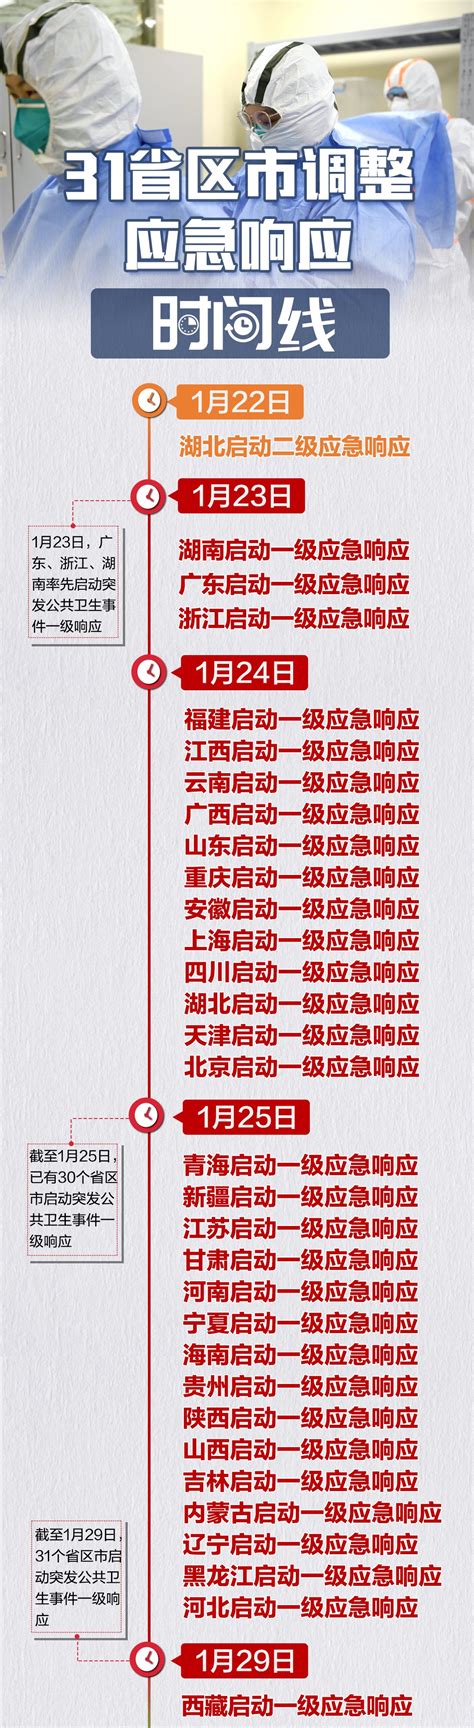 全国31省区市全部解除一级响应，回顾101天时间线 - 重庆日报